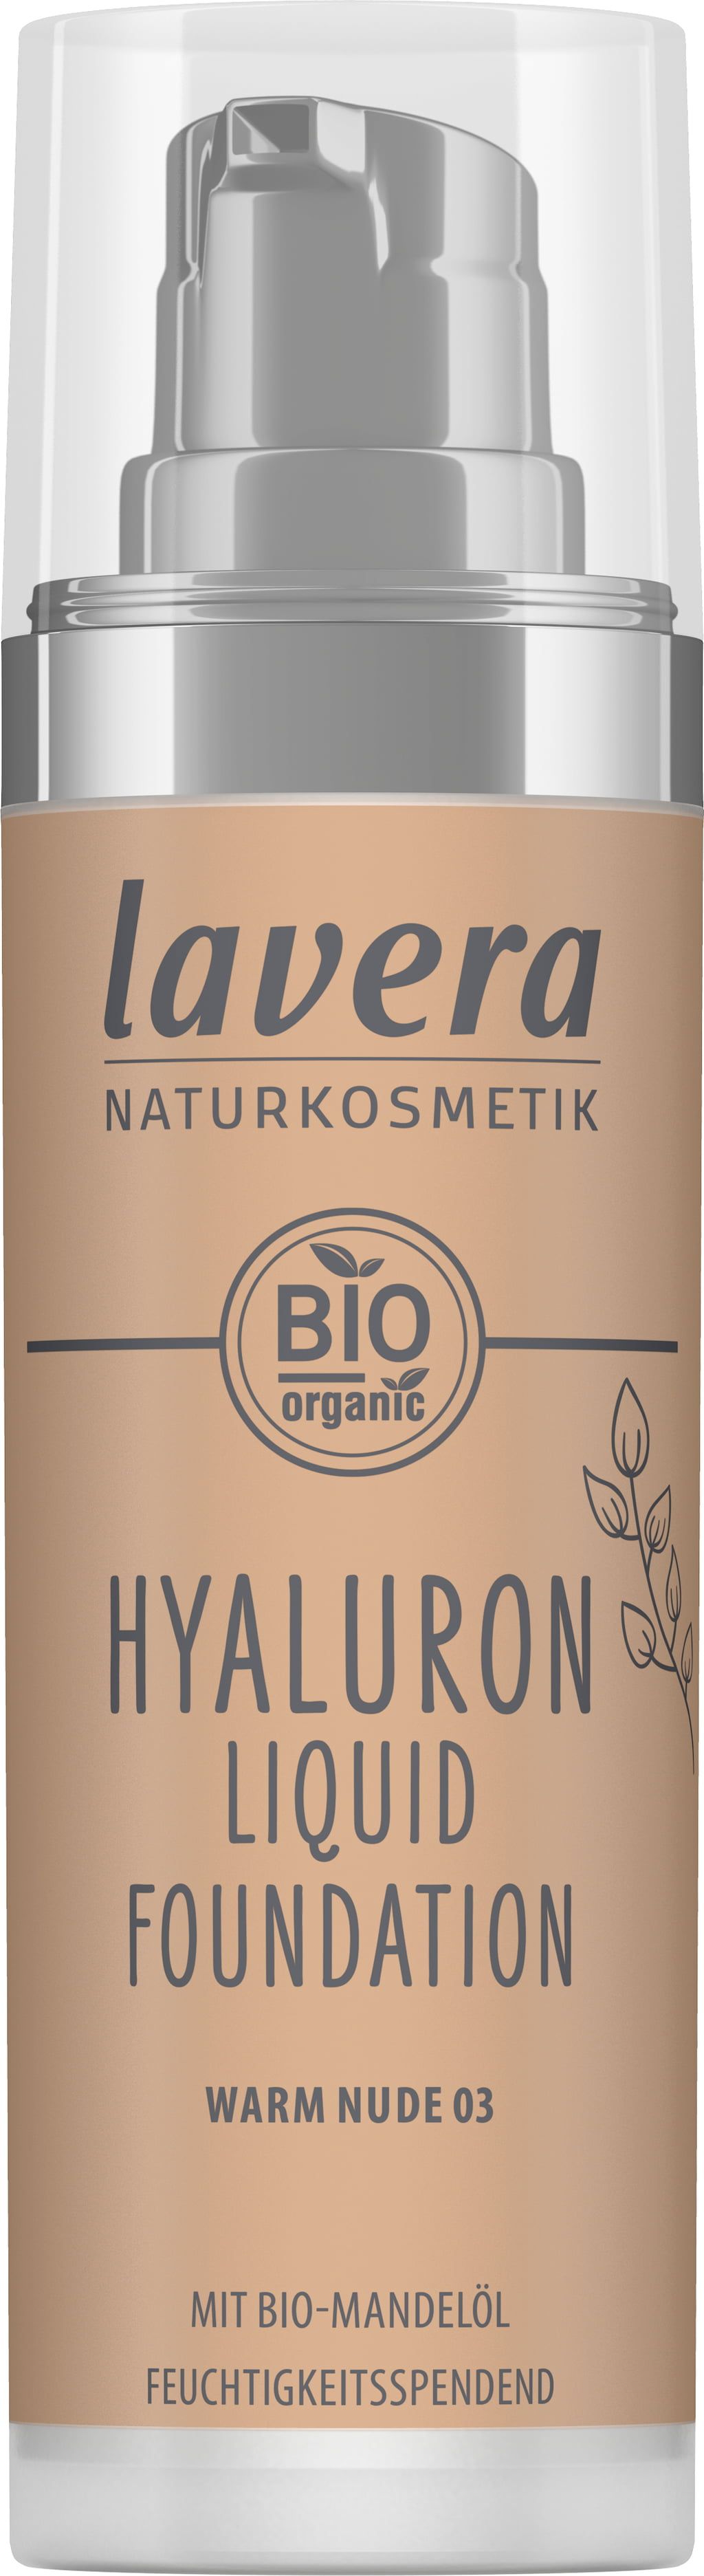 lavera Hyaluron Liquid Foundation - 03 Warm Nude